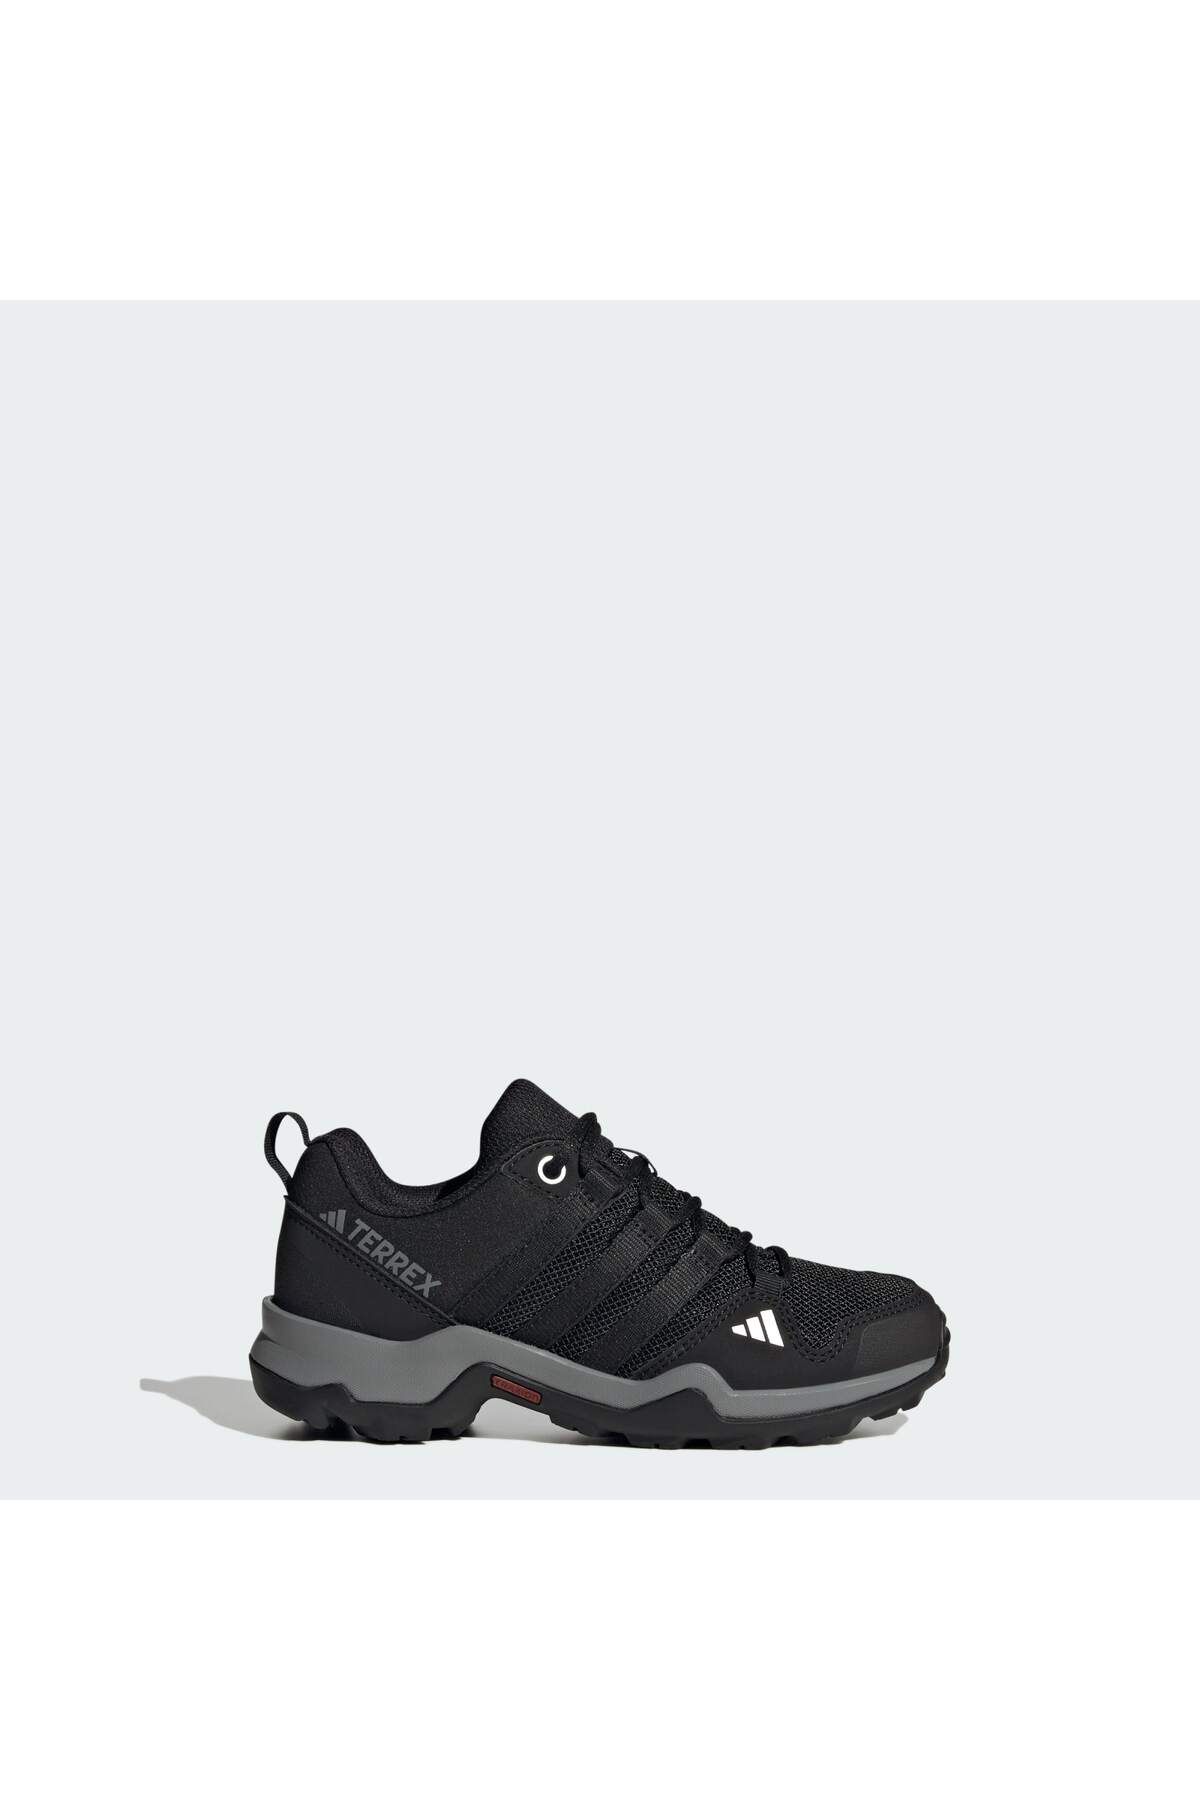 adidas Terrex Ax2r Yürüyüş Ayakkabısı